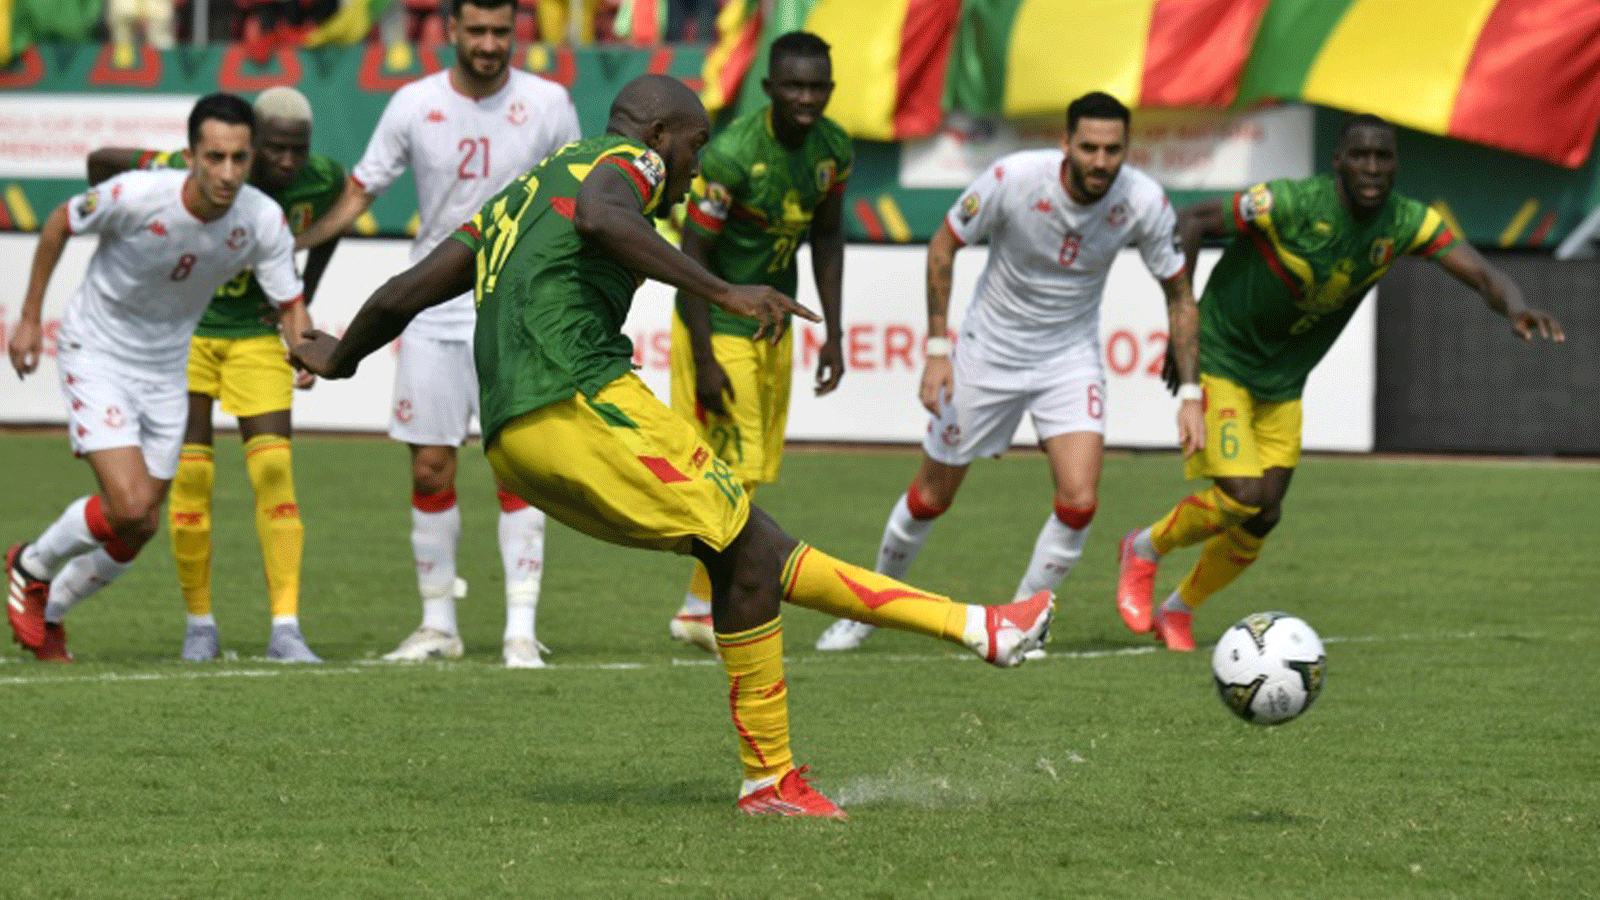 ابراهيما كوندي يسجل ركلة جزاء لمالي ضد تونس في دور المجموعات من كأس أمم أفريقيا لكرة القدم في 12 كانون الثاني/يناير 2022 في ليمبي في الكاميرون